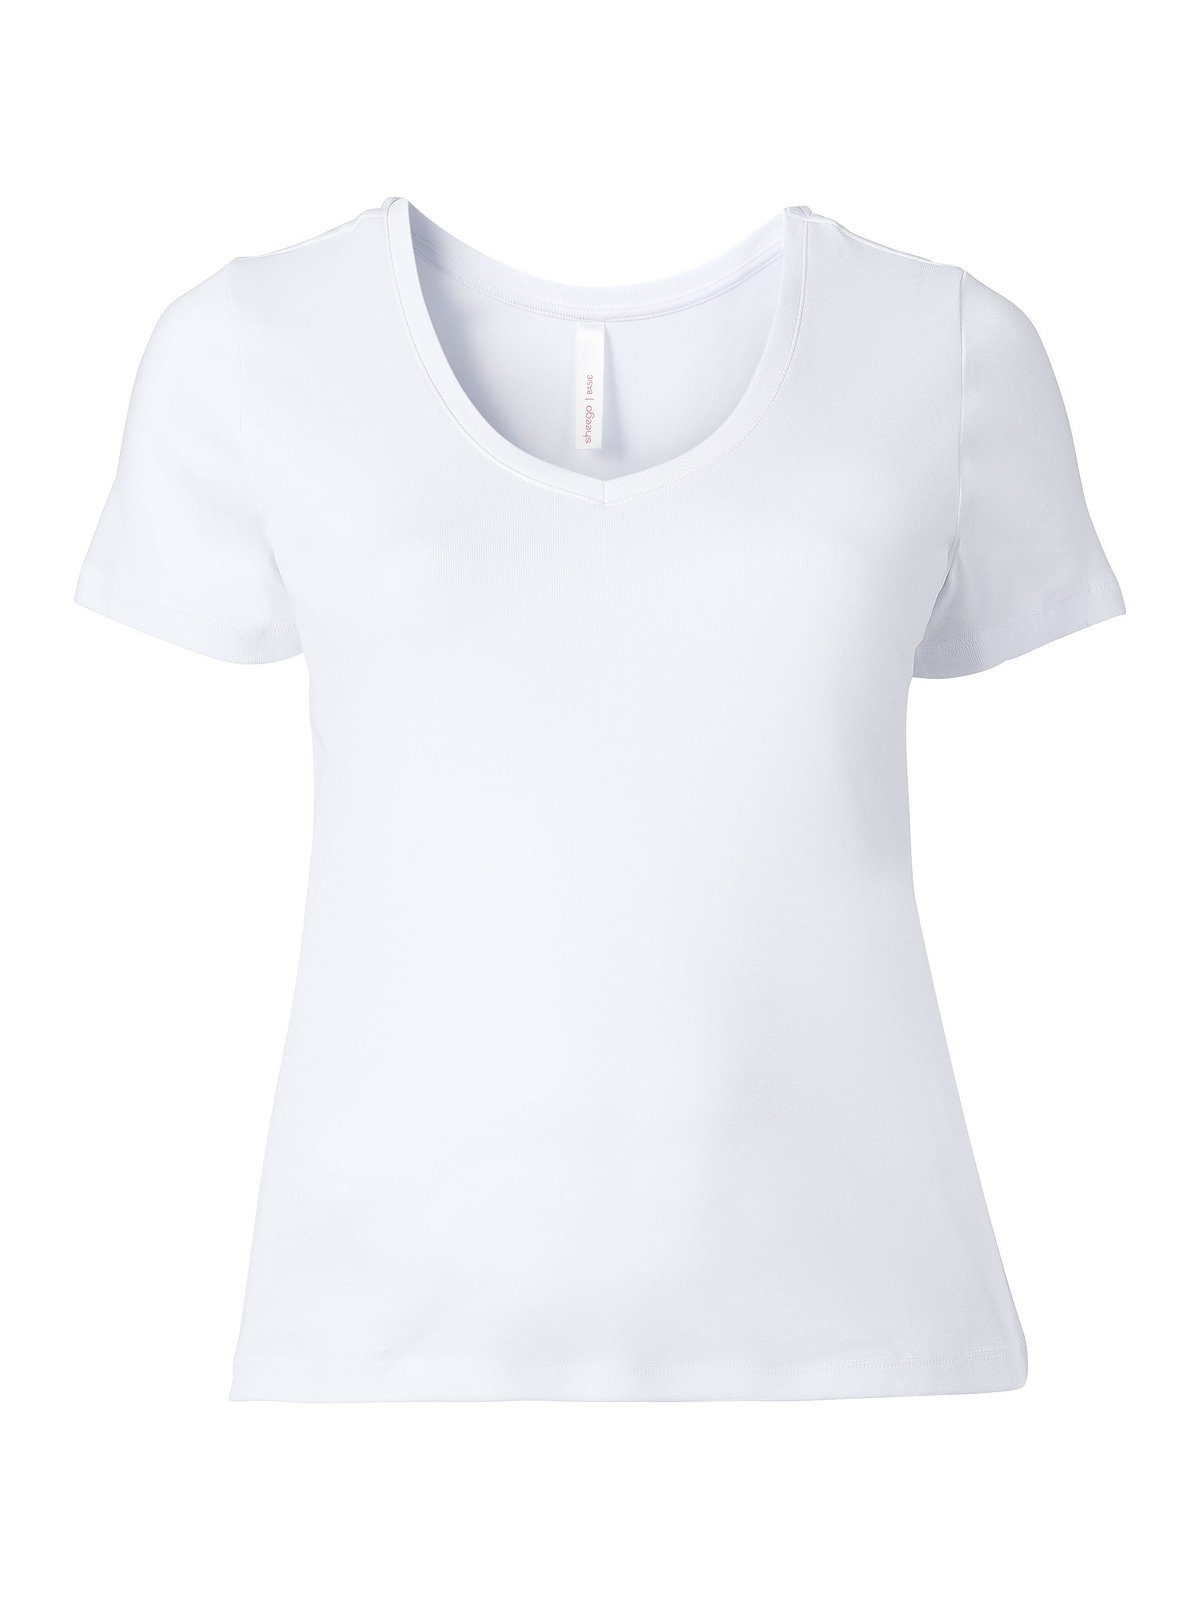 T-Shirt Größen weiß Große fein aus Sheego Qualität gerippter